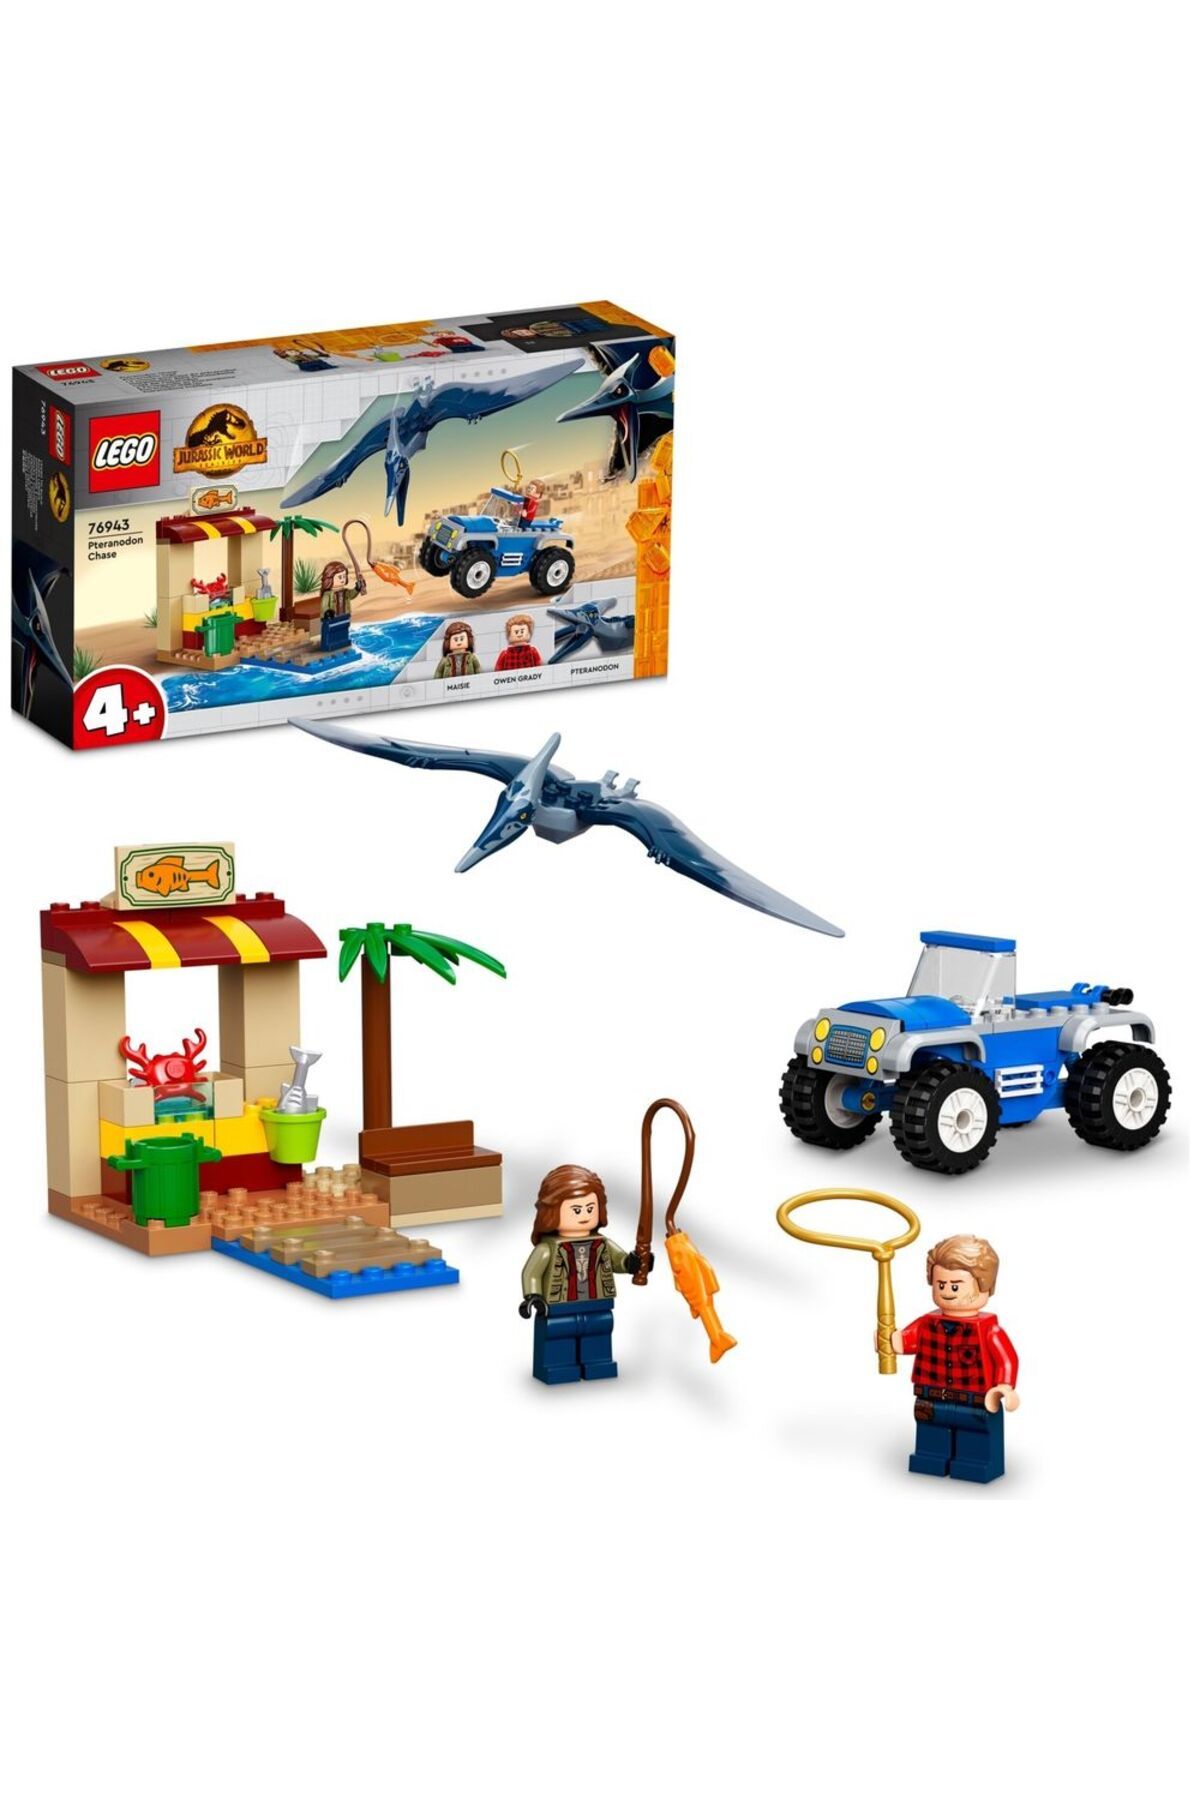 LEGO ® Jurassic World Pteranodon Takibi 76943 - 4 Yaş ve Üzeri Çocuklar için Yapım Seti (94 Parça)